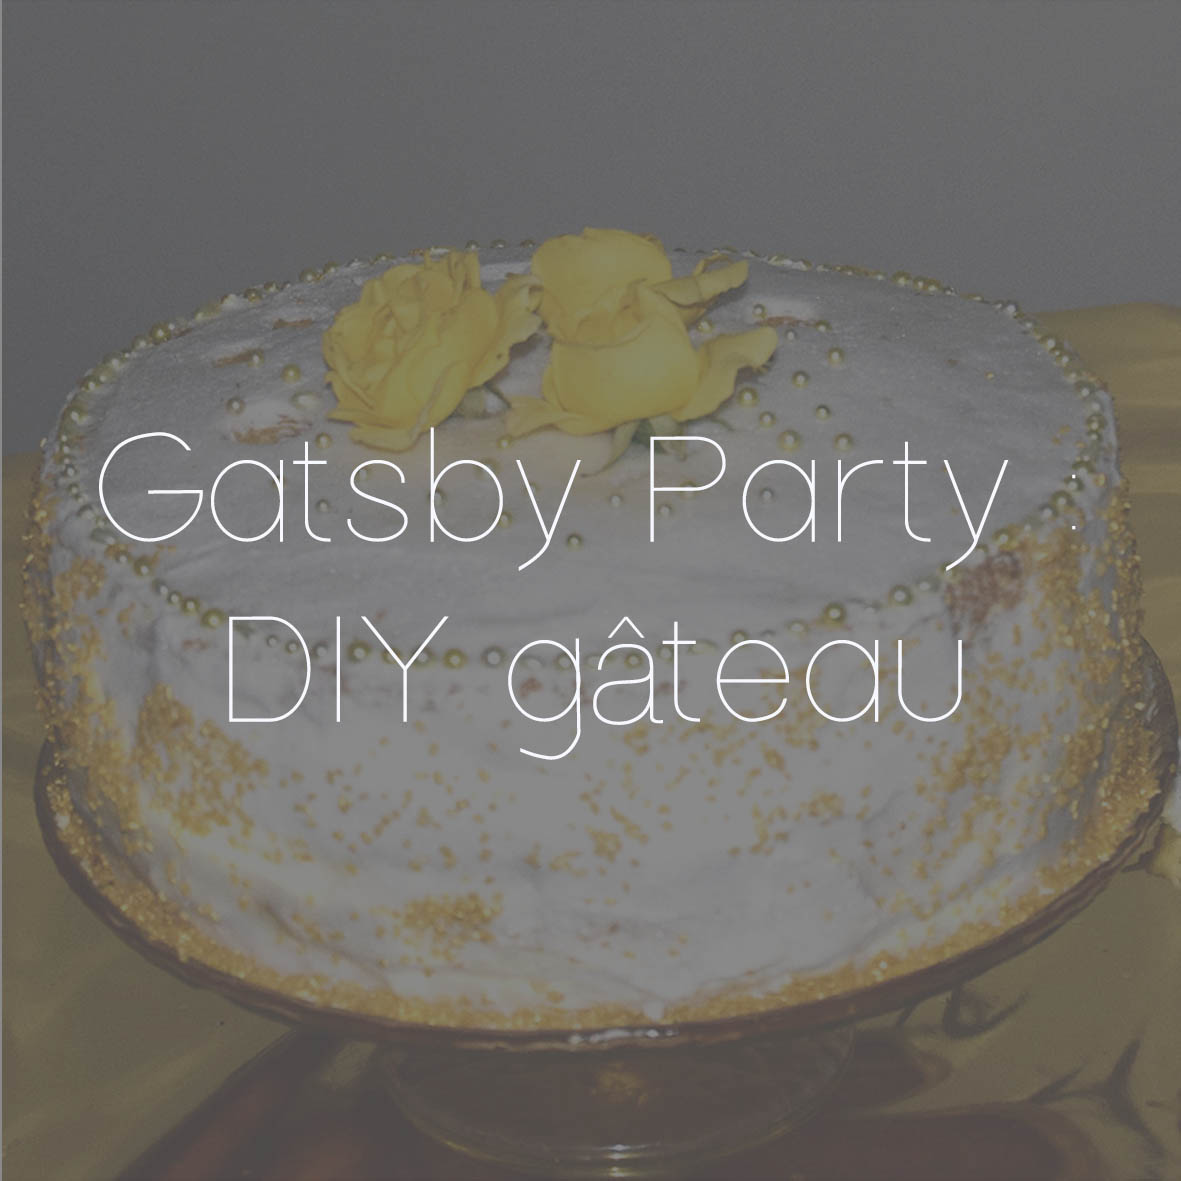 41 GATSBY PARTY DIY GATEAU